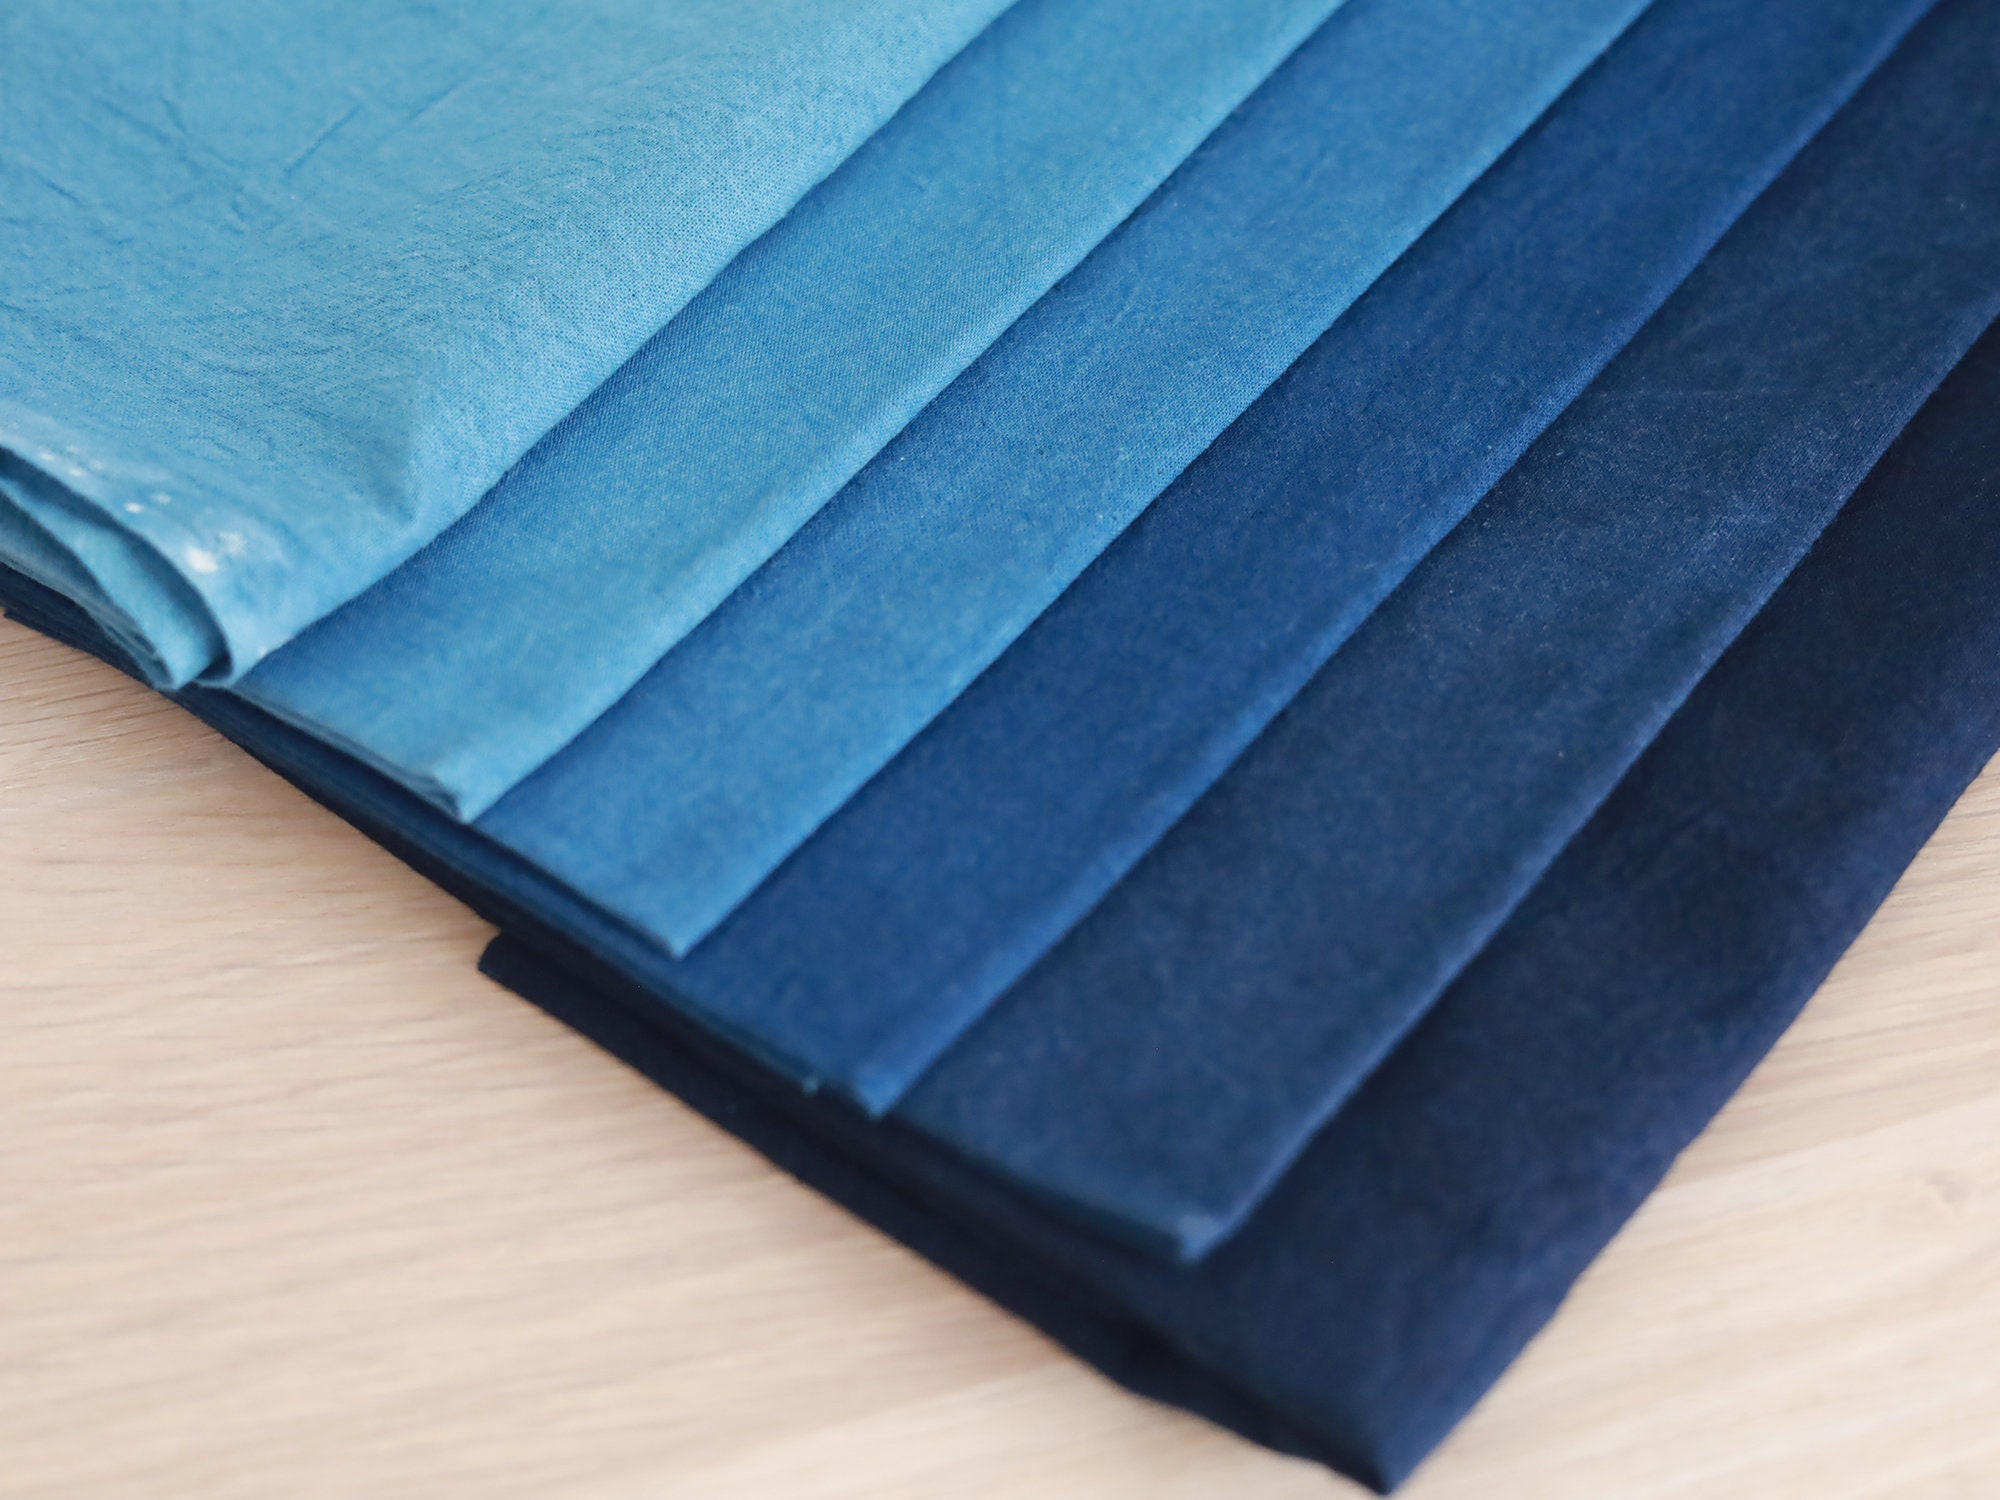 Indigo Cotton Sashiko Fabric by the yard - 714329347417